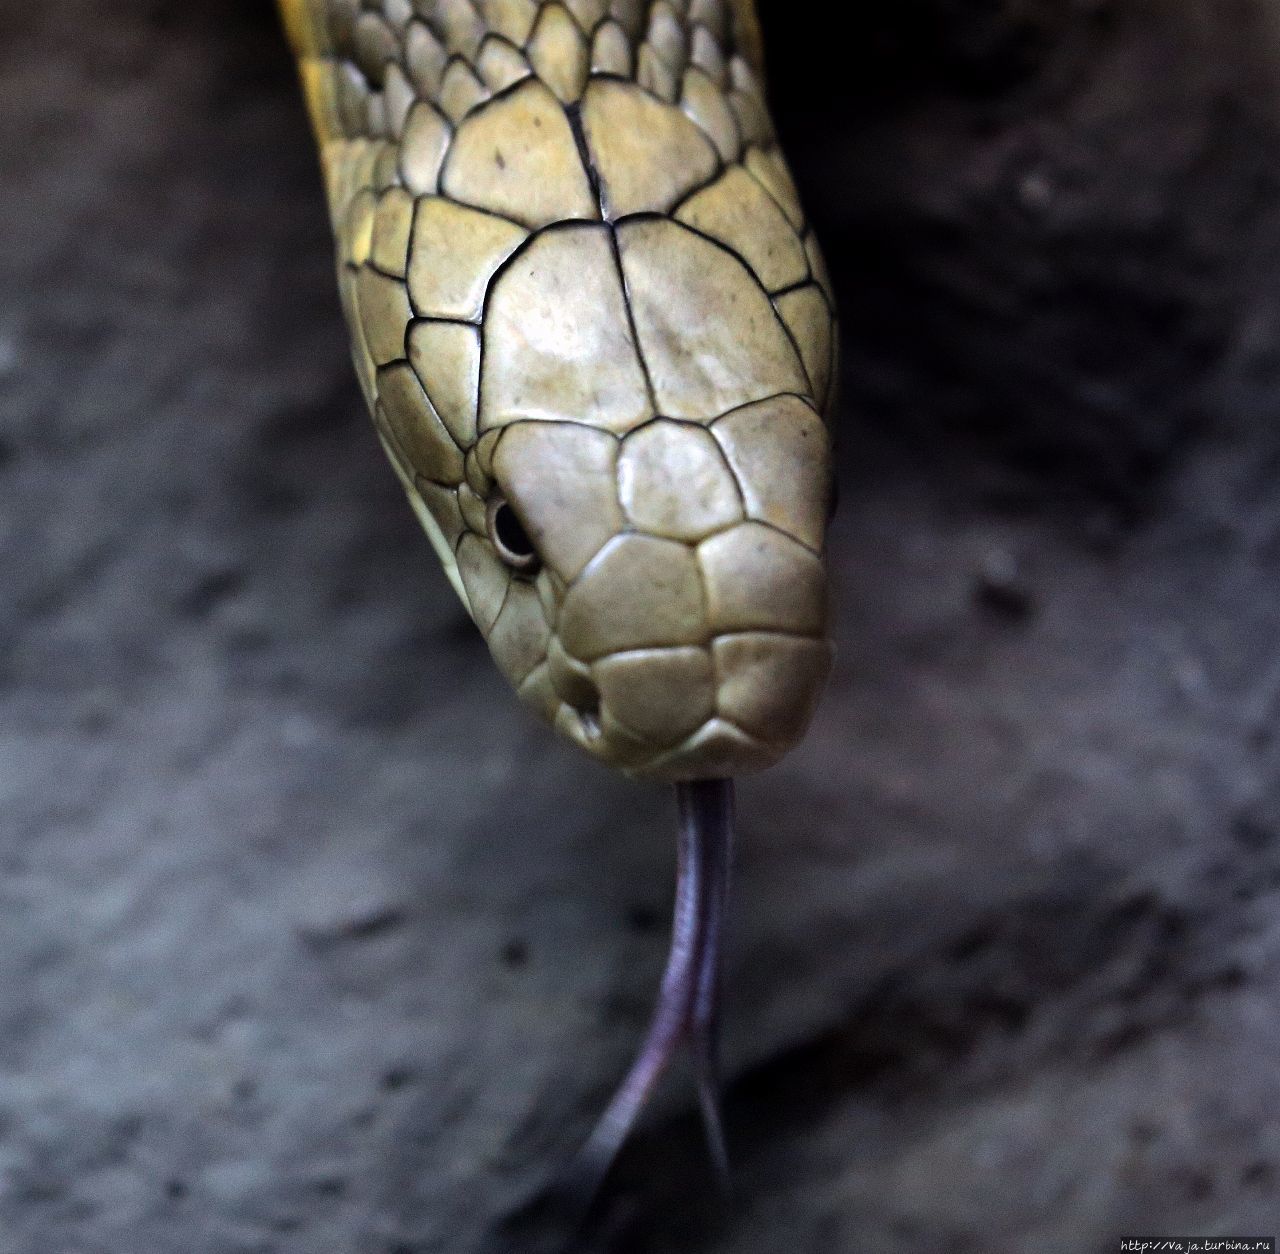 Звериный калейдоскоп. Змеи и грызуны Ханой, Вьетнам